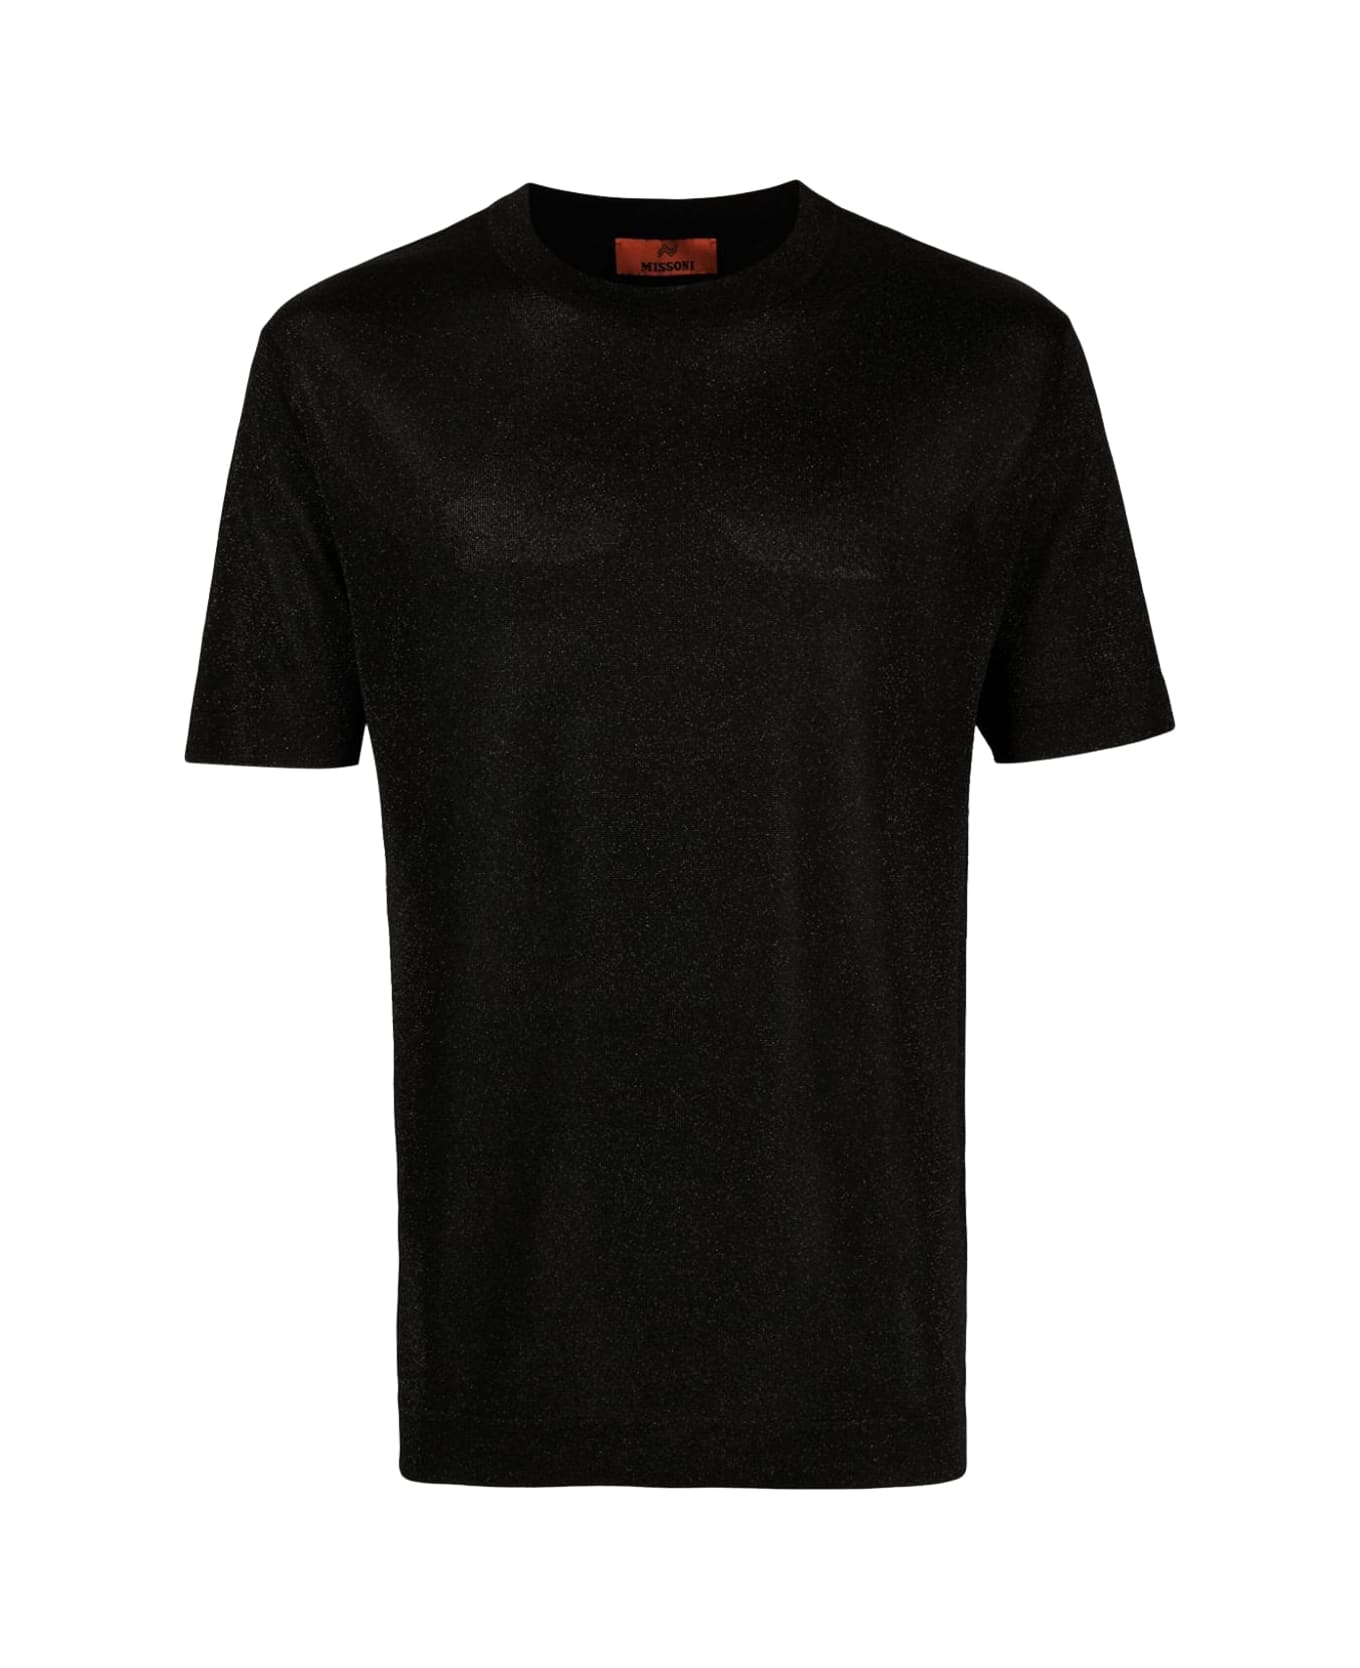 Missoni Black Viscose Blend T-shirt - S91J5